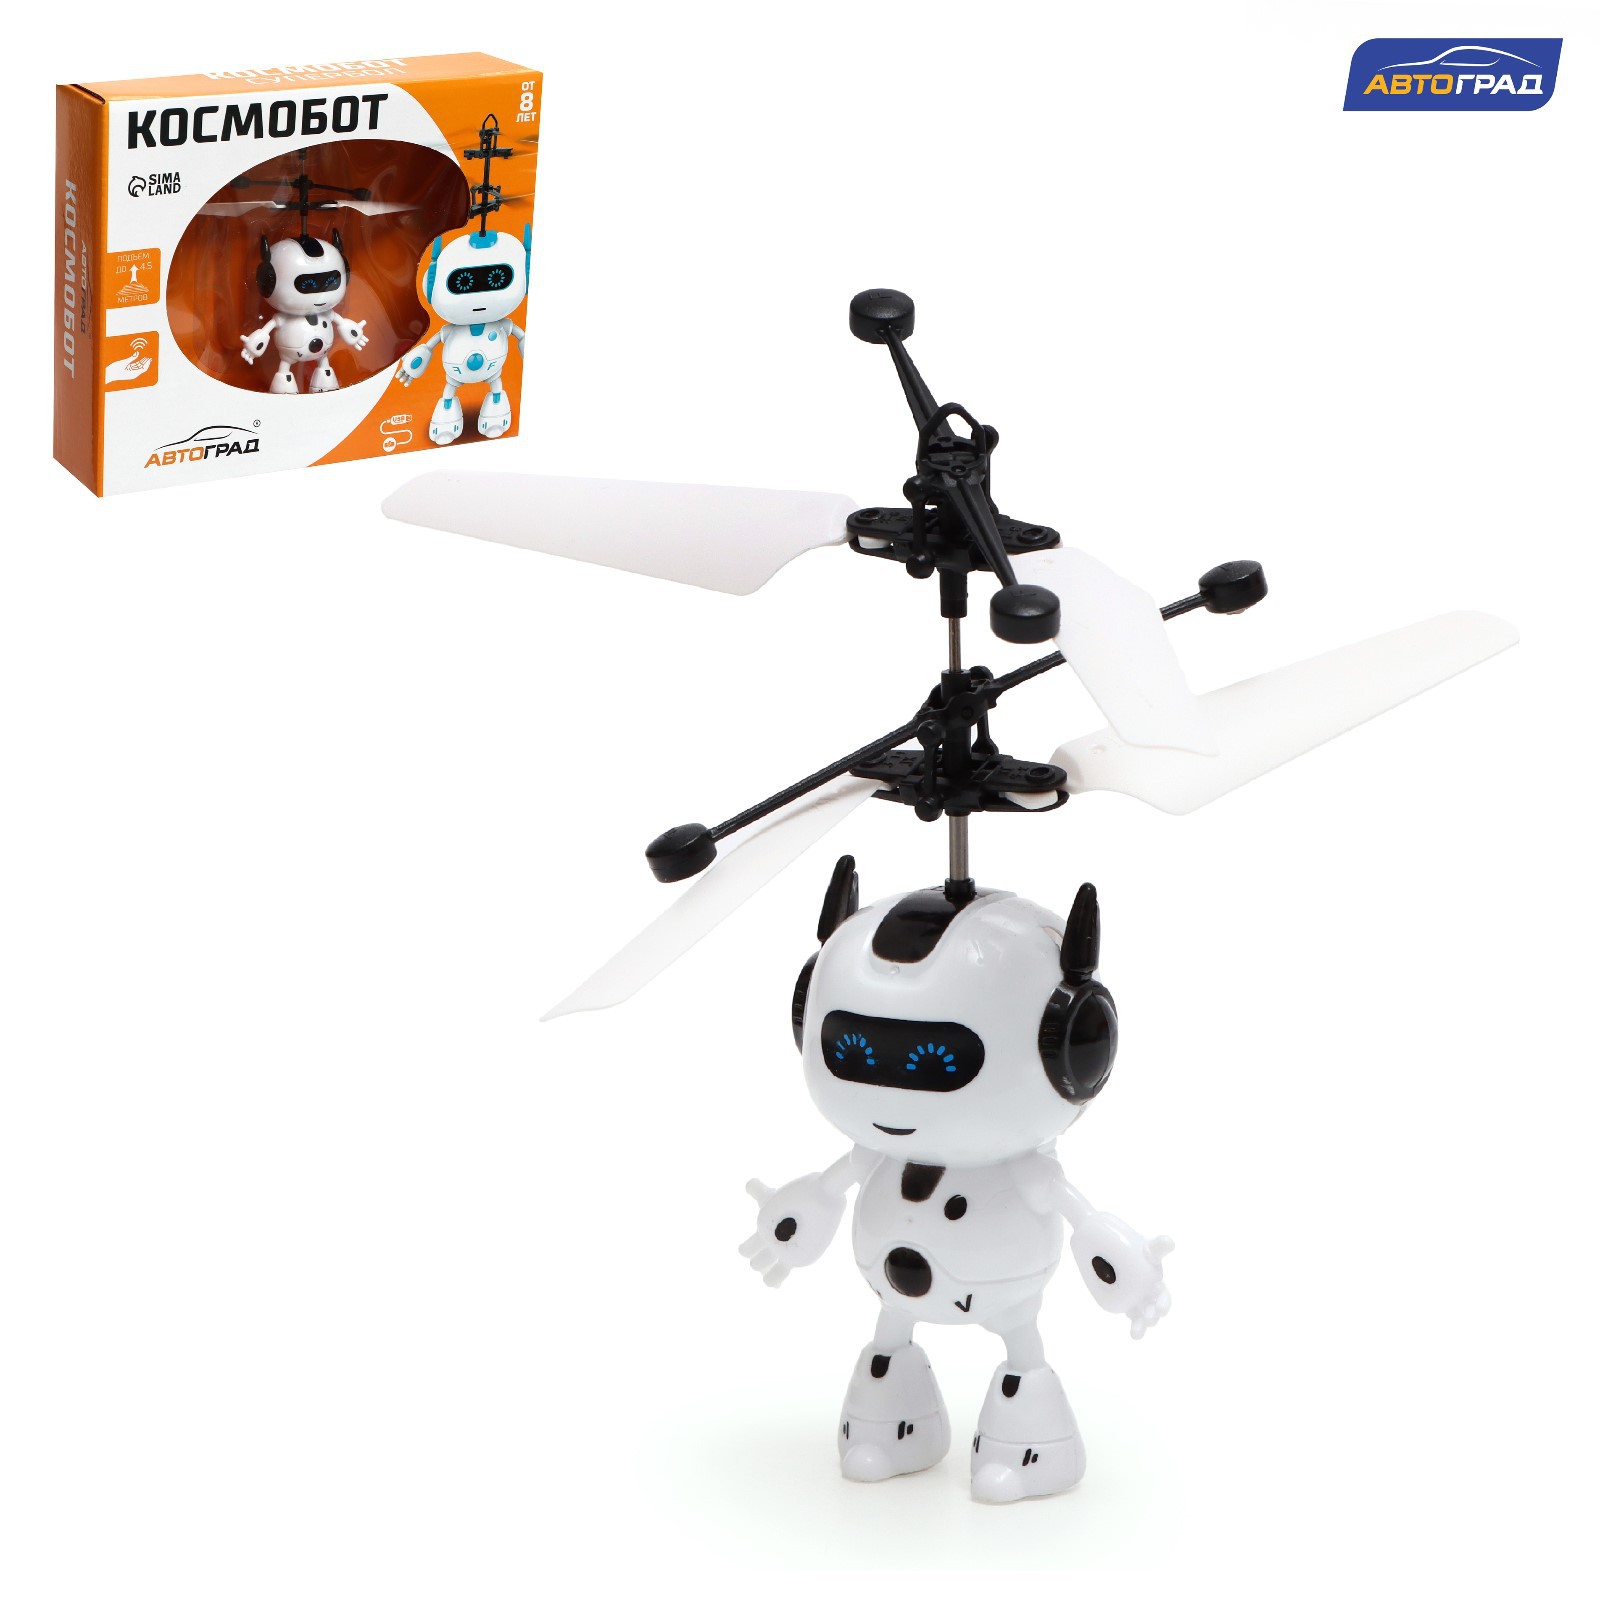 Летающая игрушка Автоград «Космобот» работает от аккумулятора цвет бело-чёрный - фото 1